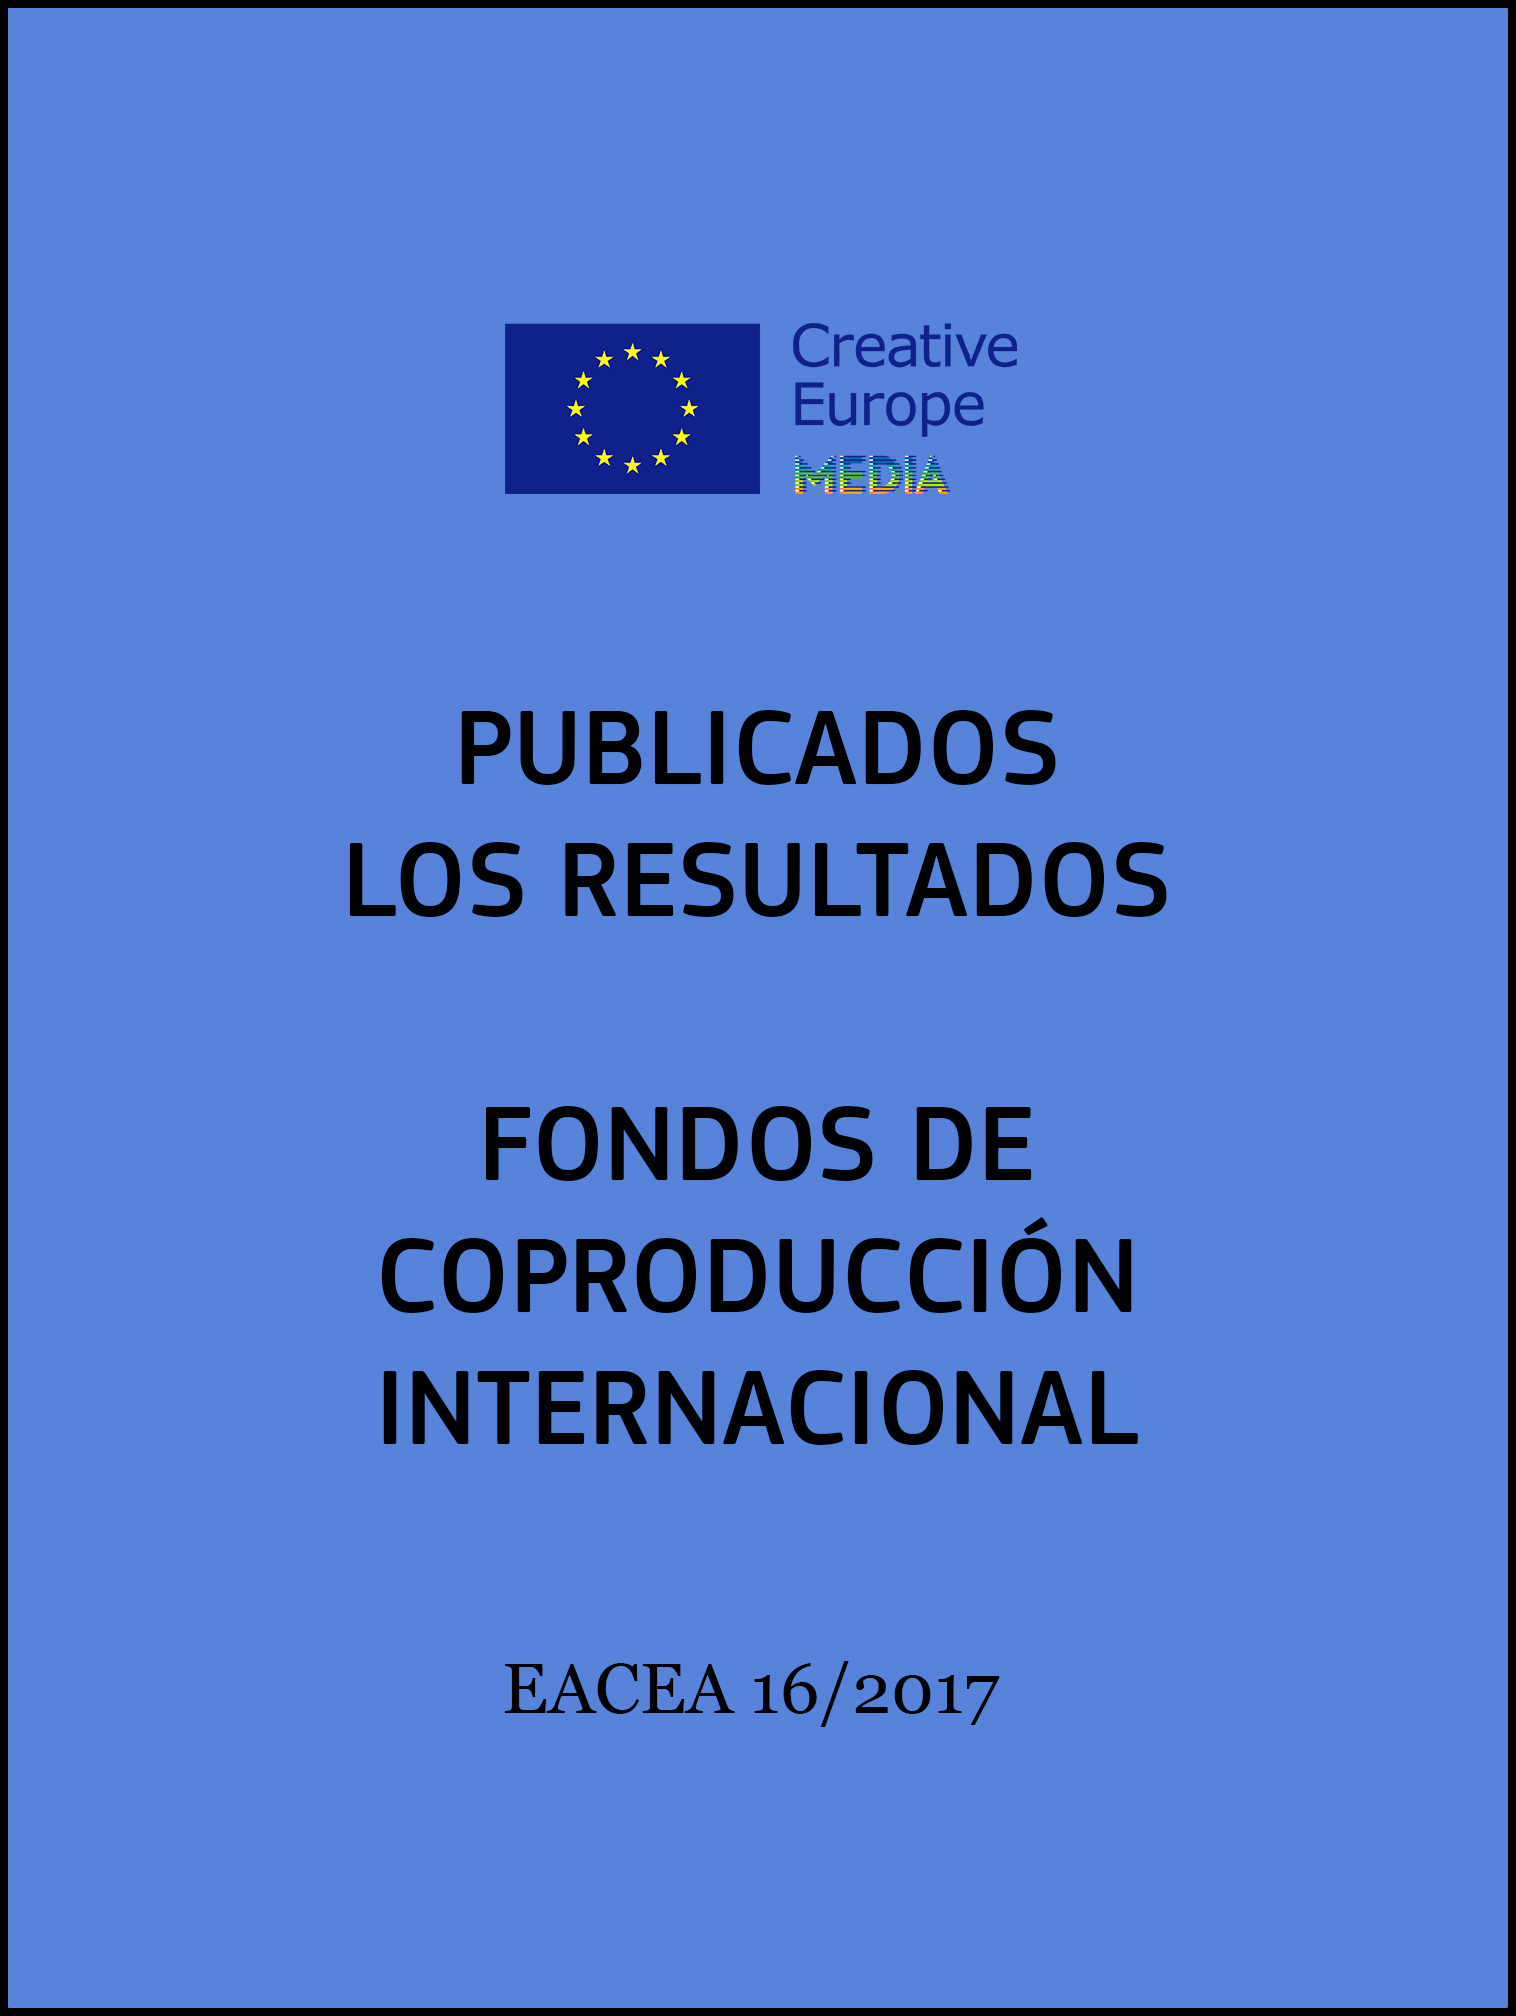 FondosdecoproduccioninternacionalResultados InteriorEACEA162017